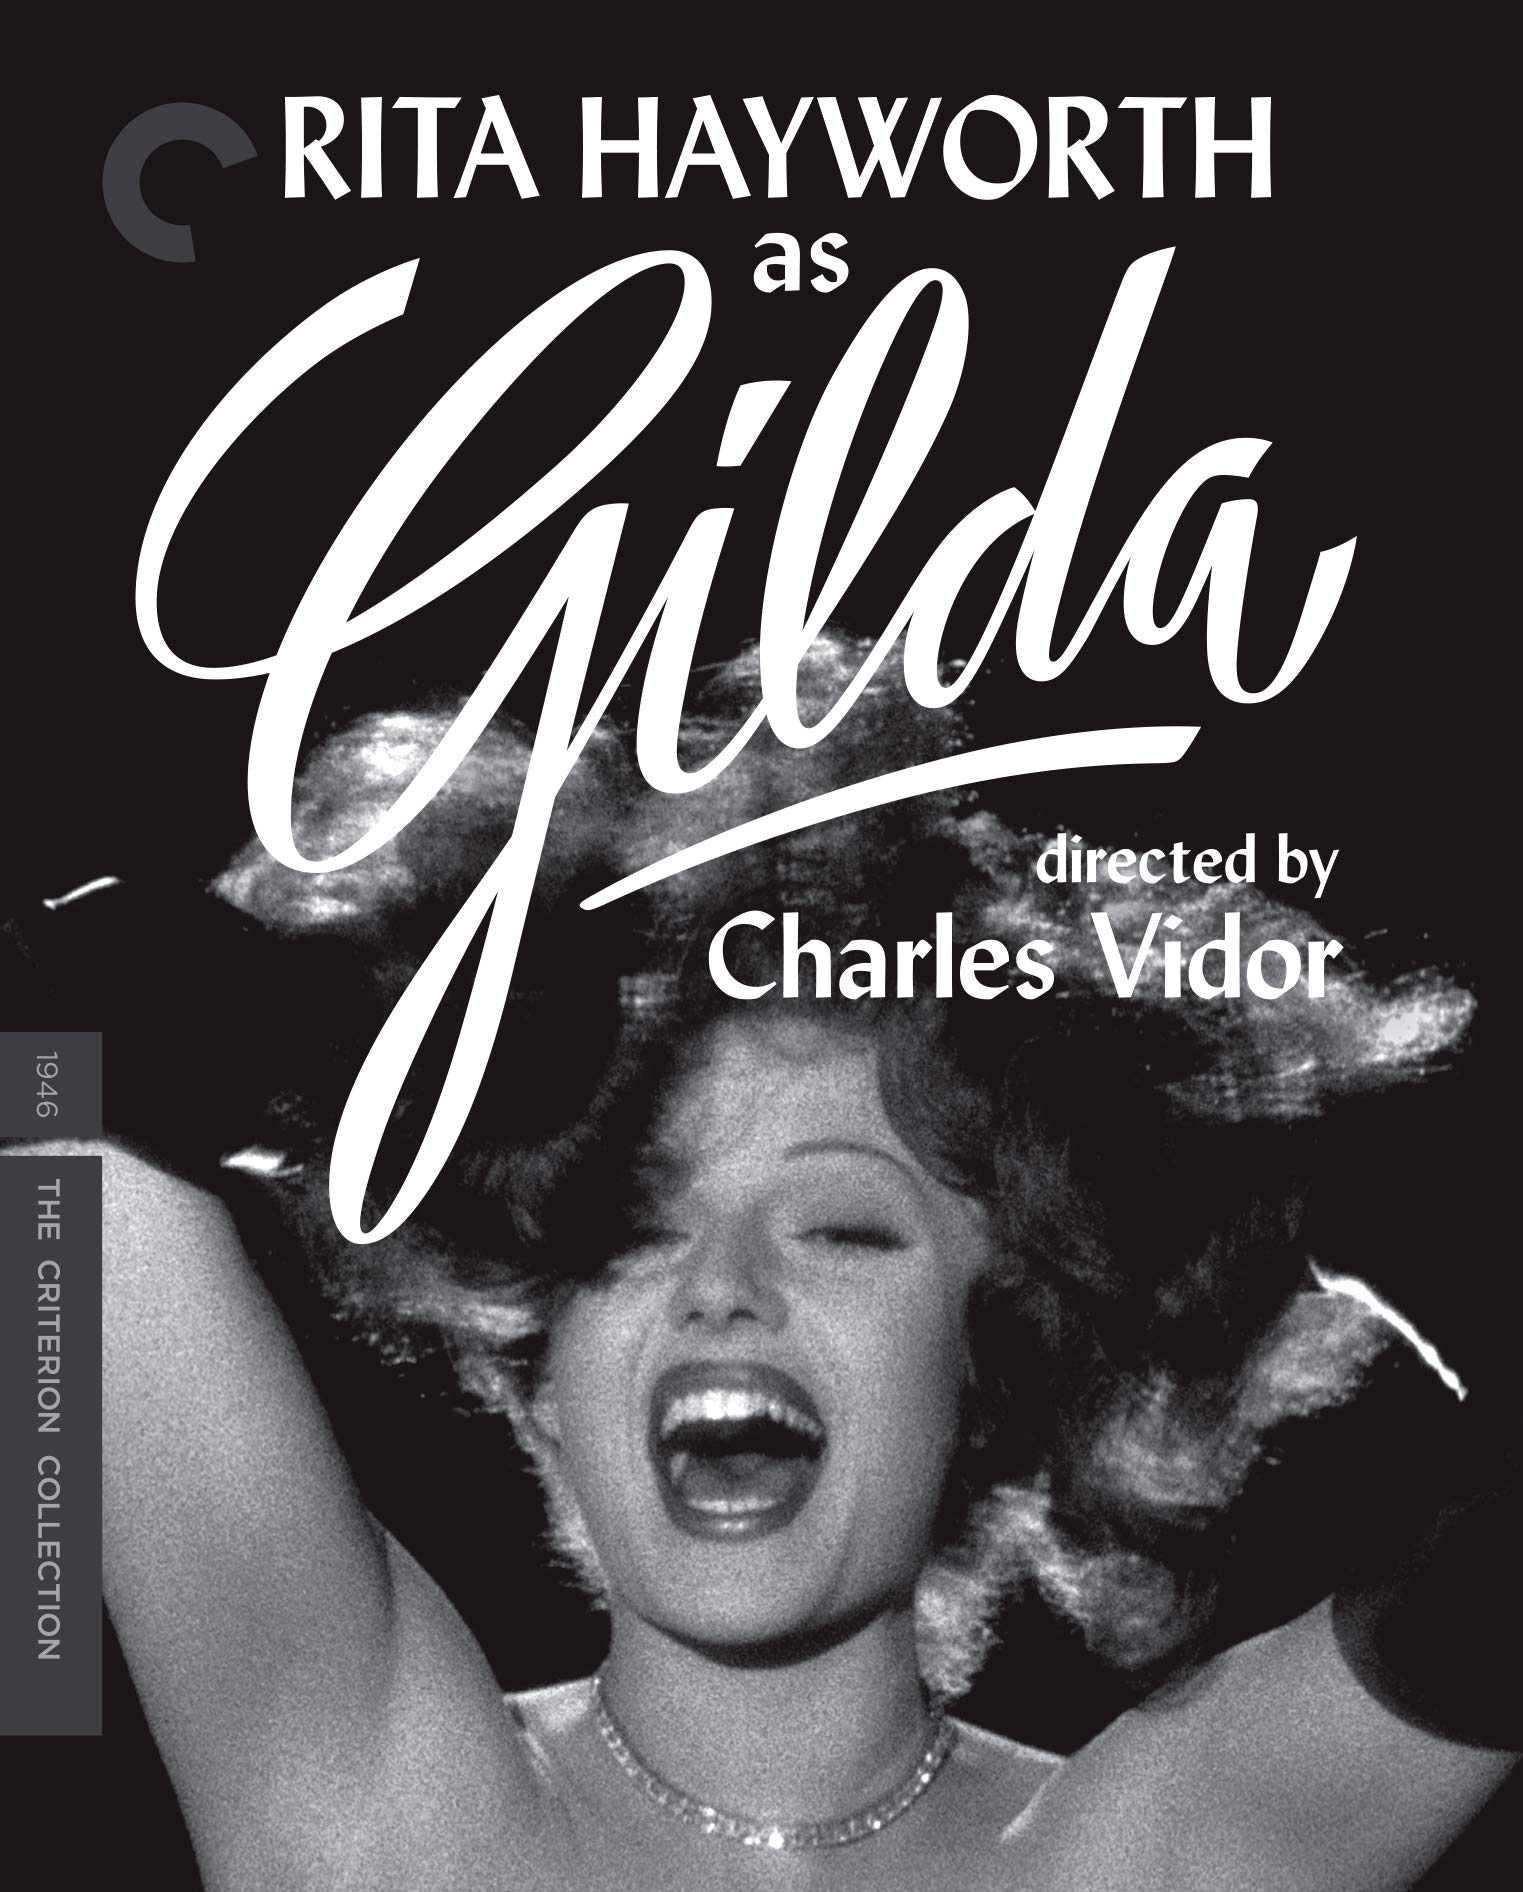 Rita Hayworth as Gilda, directed by Charles Vidor